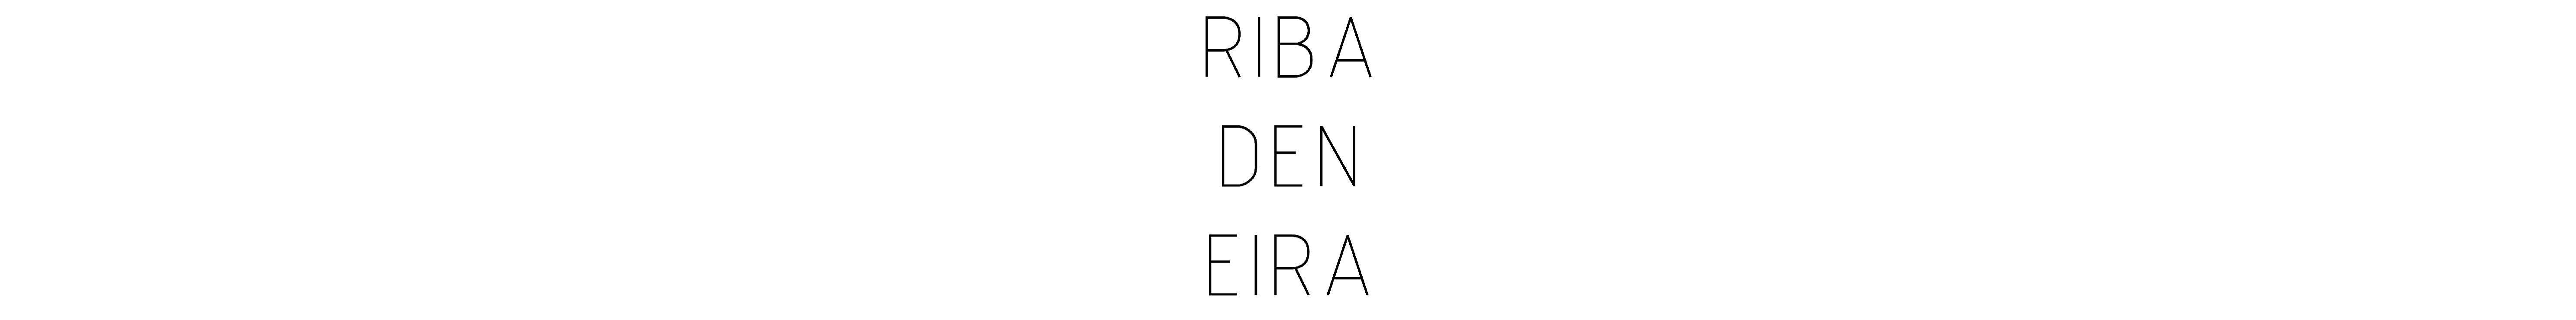 Cristian Ribadeneira's profile banner